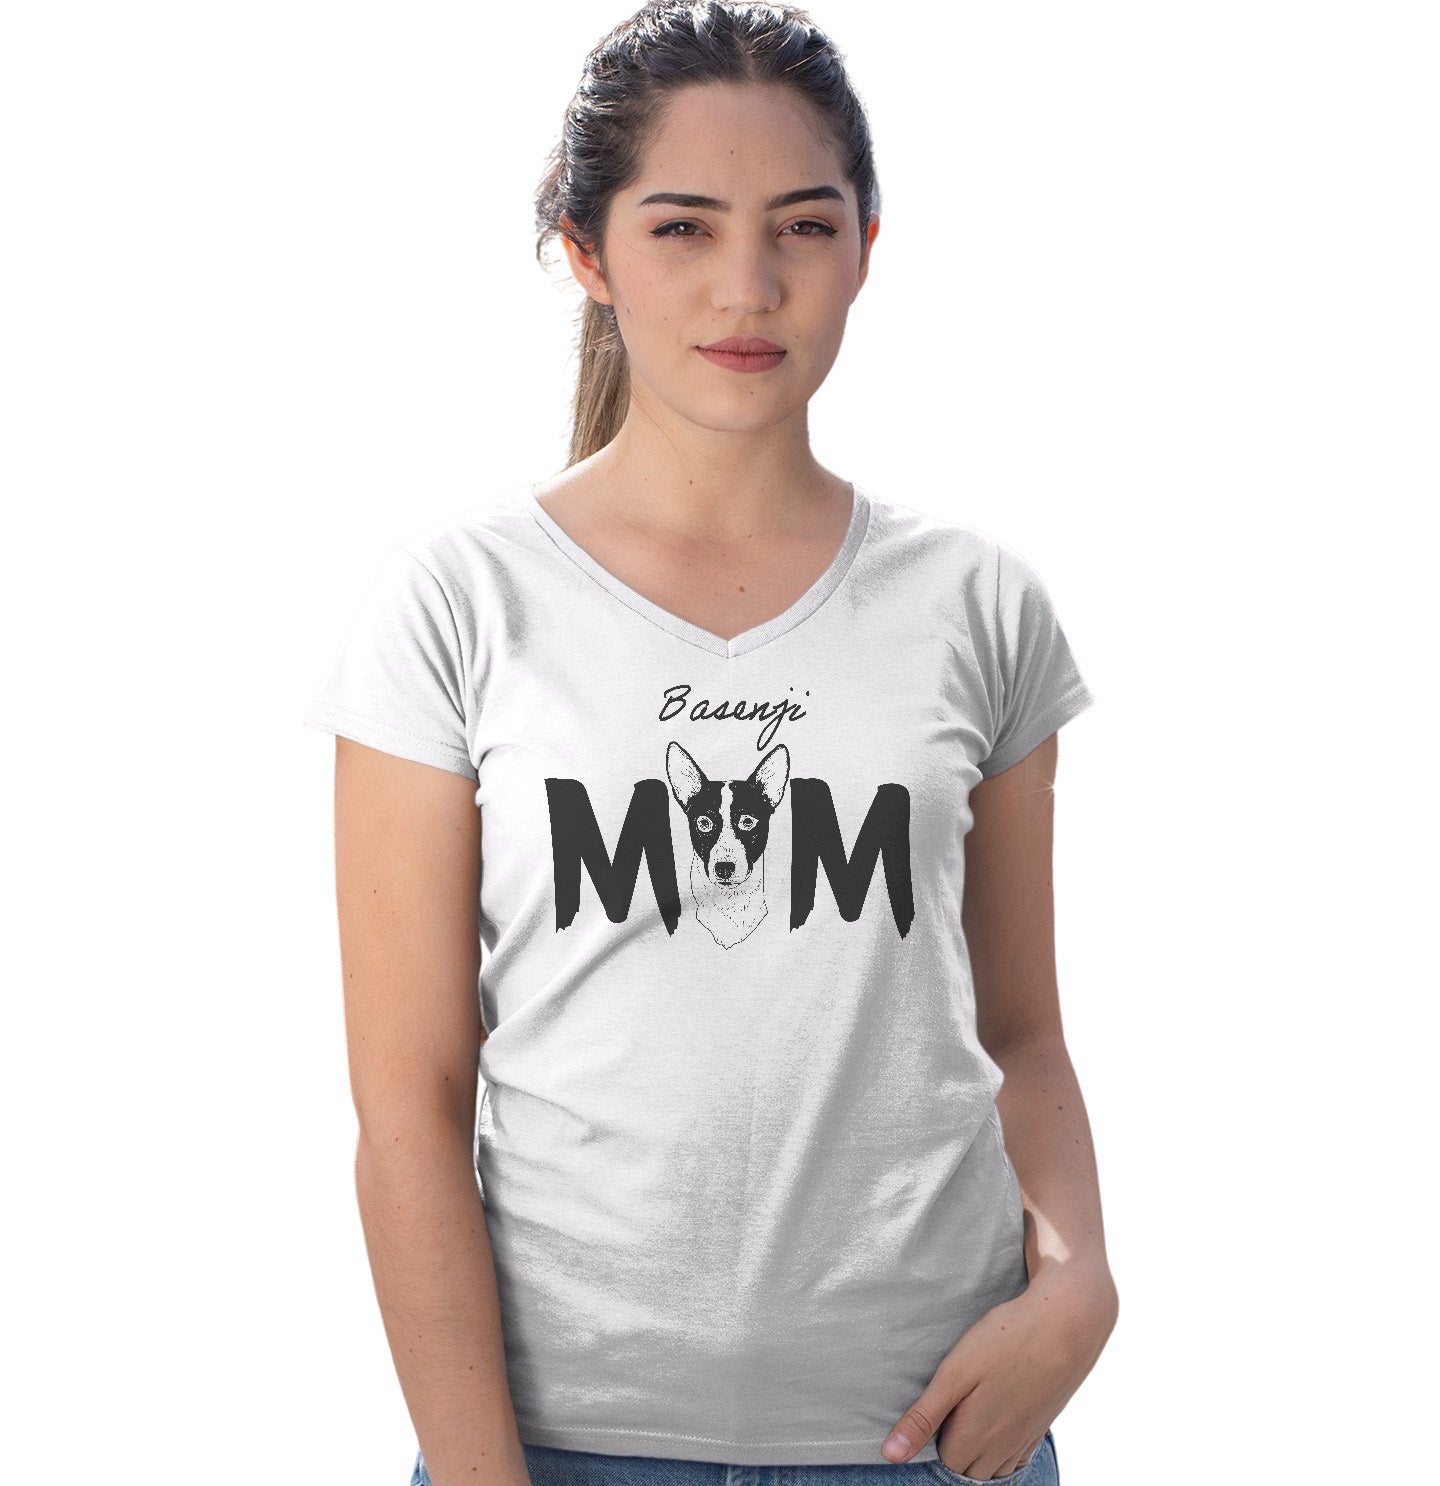 Basenji Breed Mom - Women's V-Neck T-Shirt